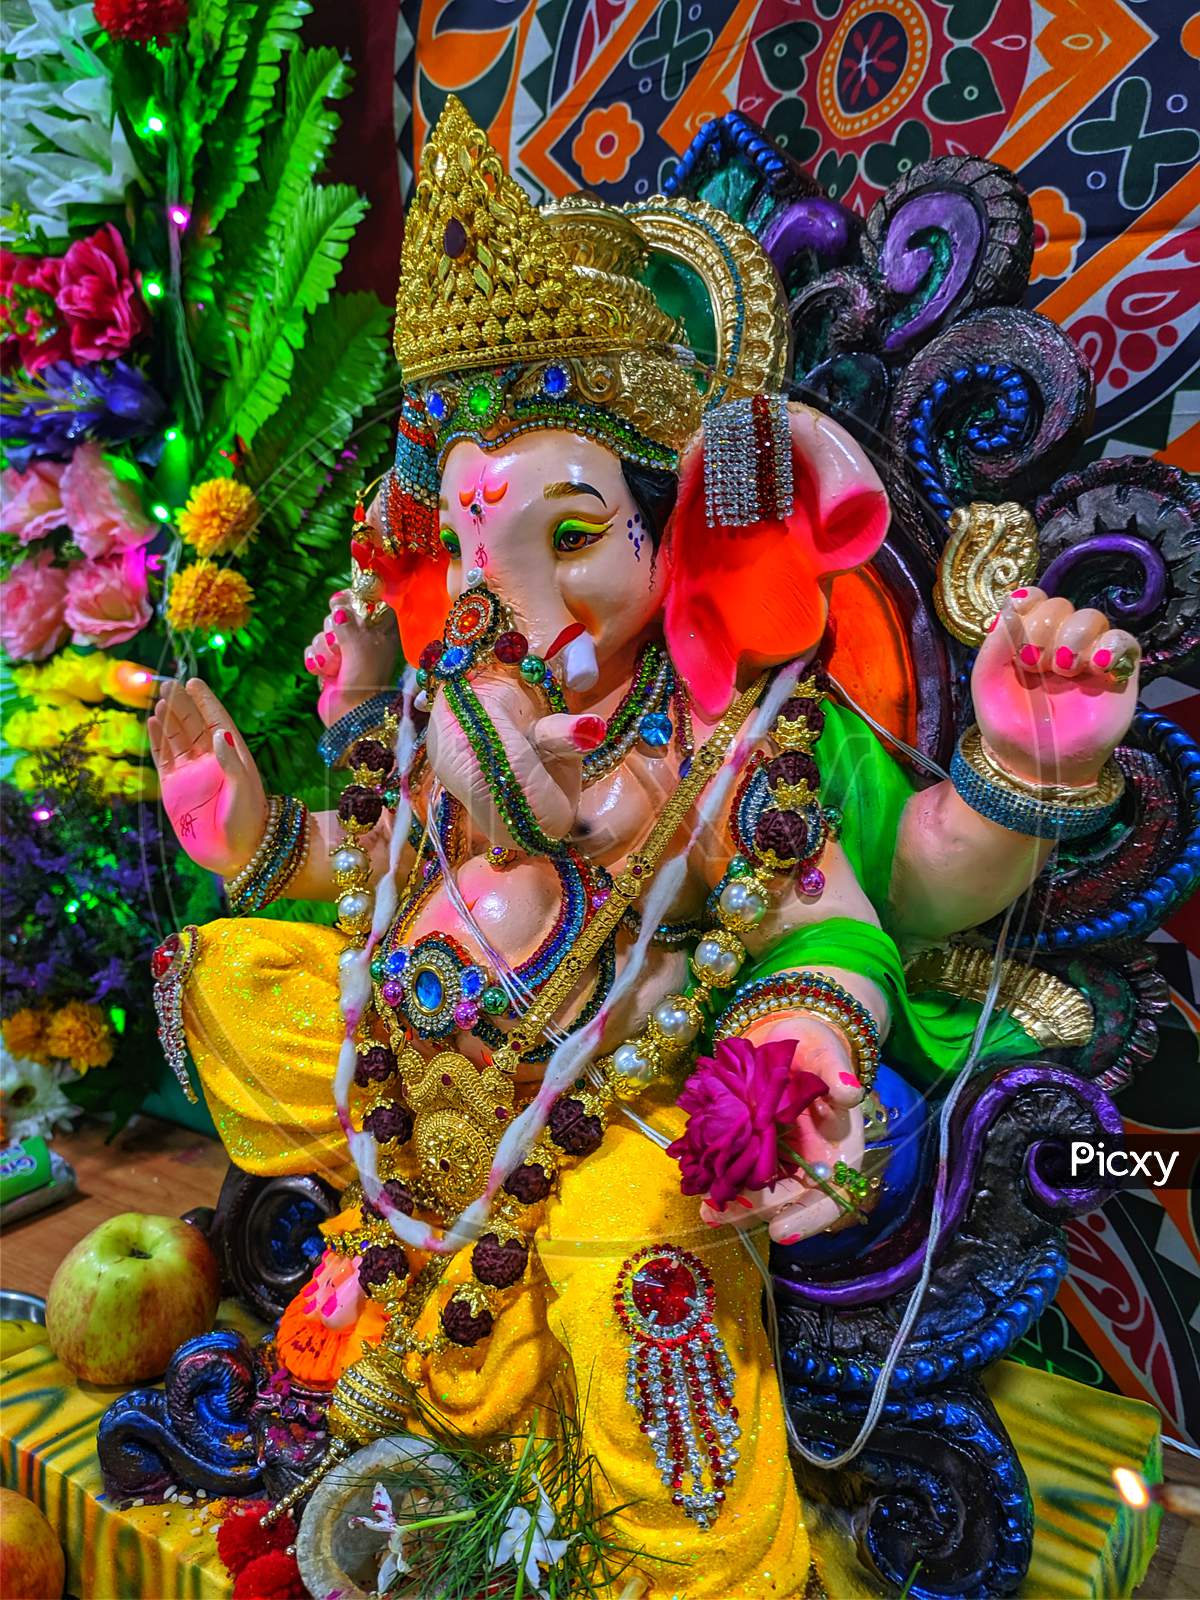 A close up shot of lord Ganesha